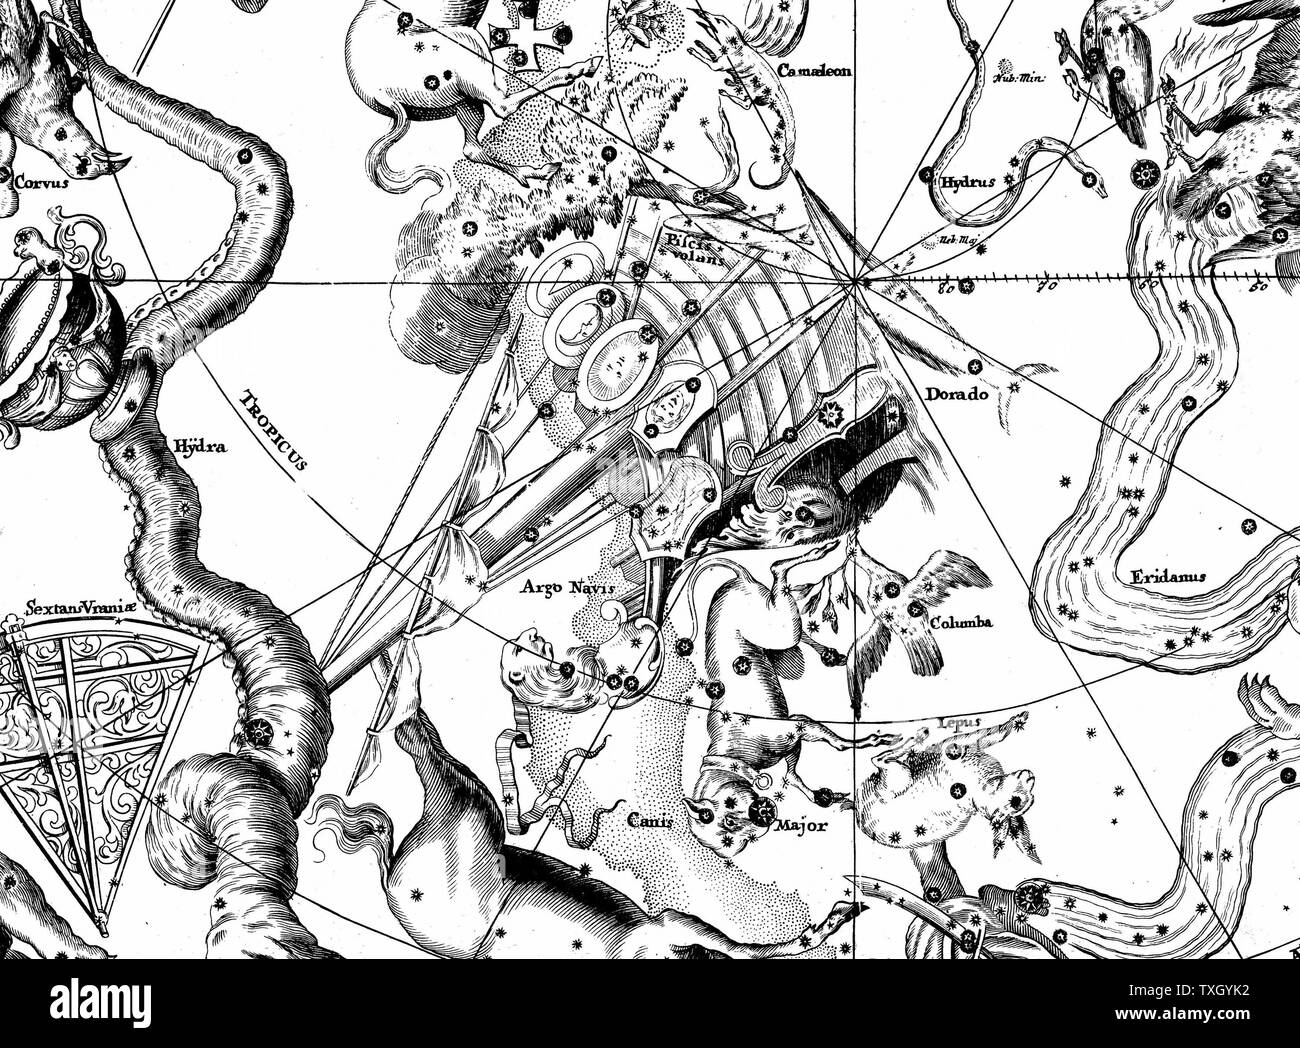 Sud della costellazione di Argo Navis da John Gabriel Doppelmayer "Atlas Coelestis' Norimberga 1742. Incisione su rame Foto Stock